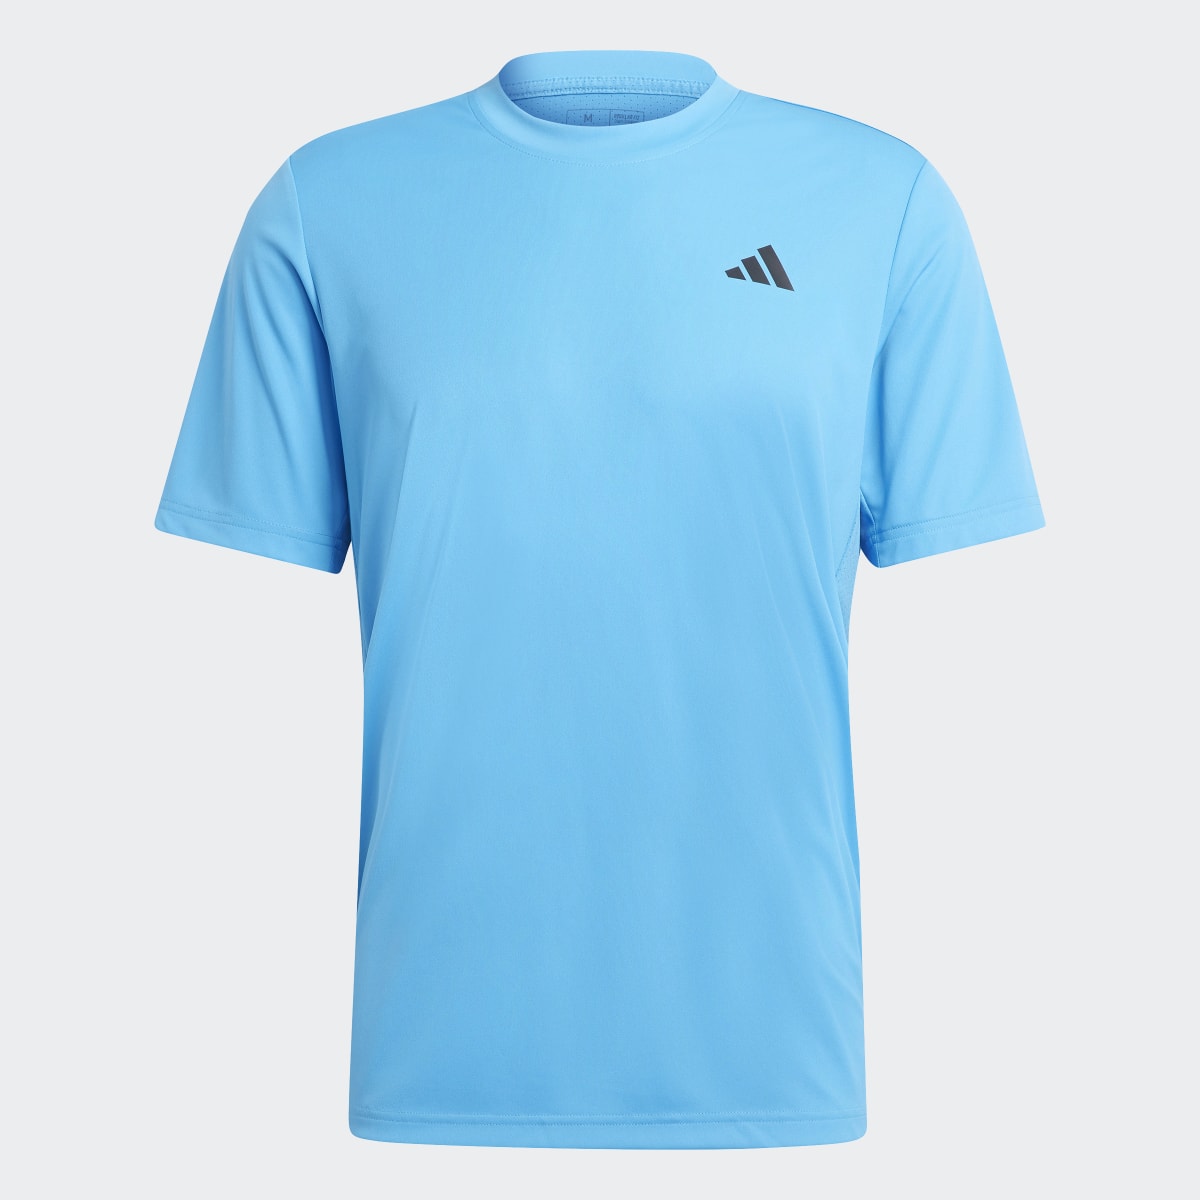 Adidas Club Tennis T-Shirt. 5